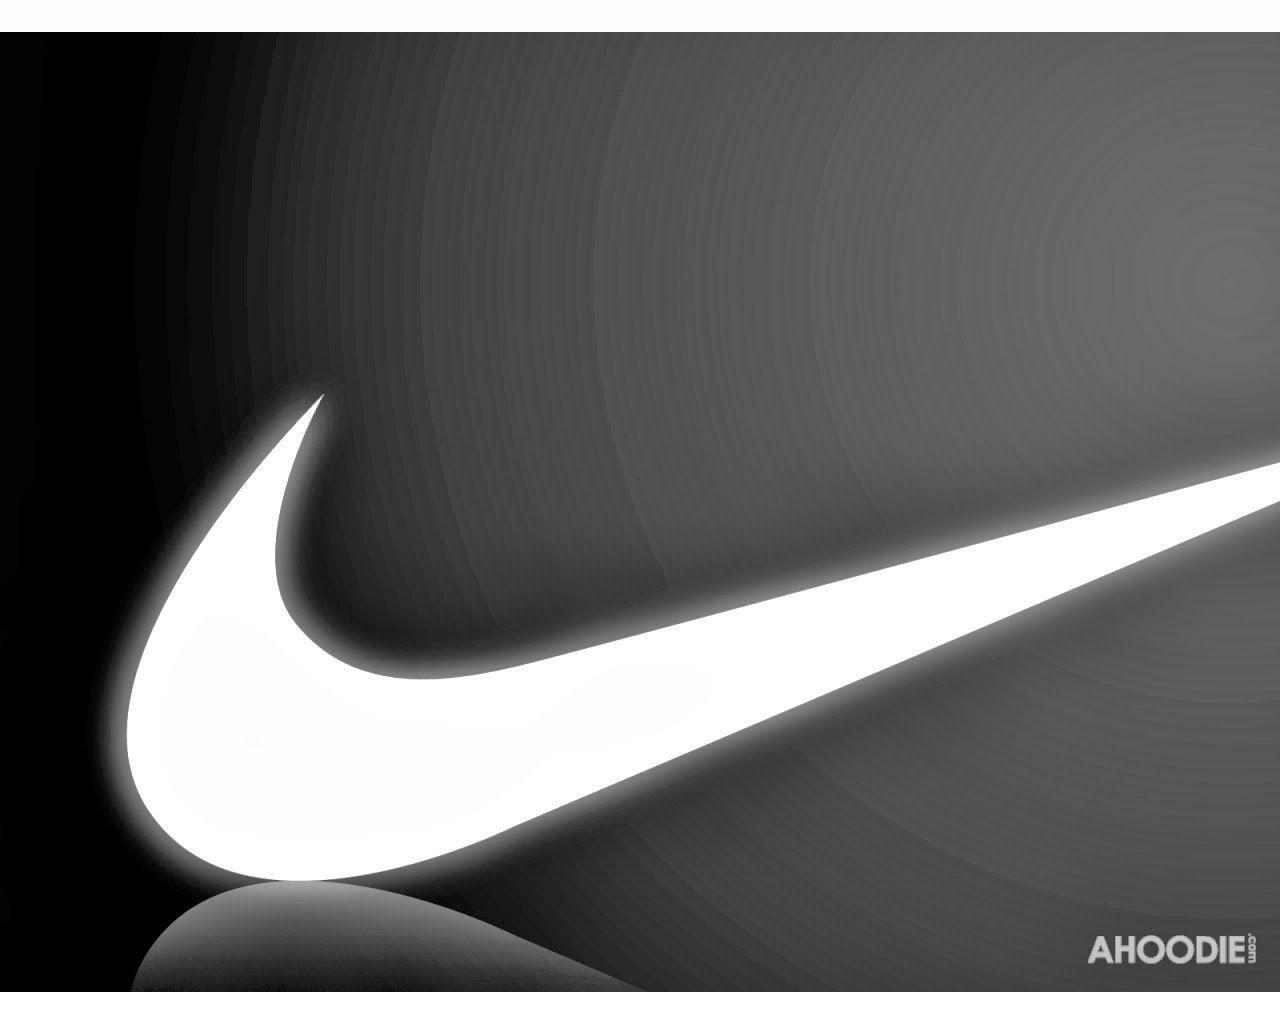 Free Logos Download: Nike Swoosh Logo